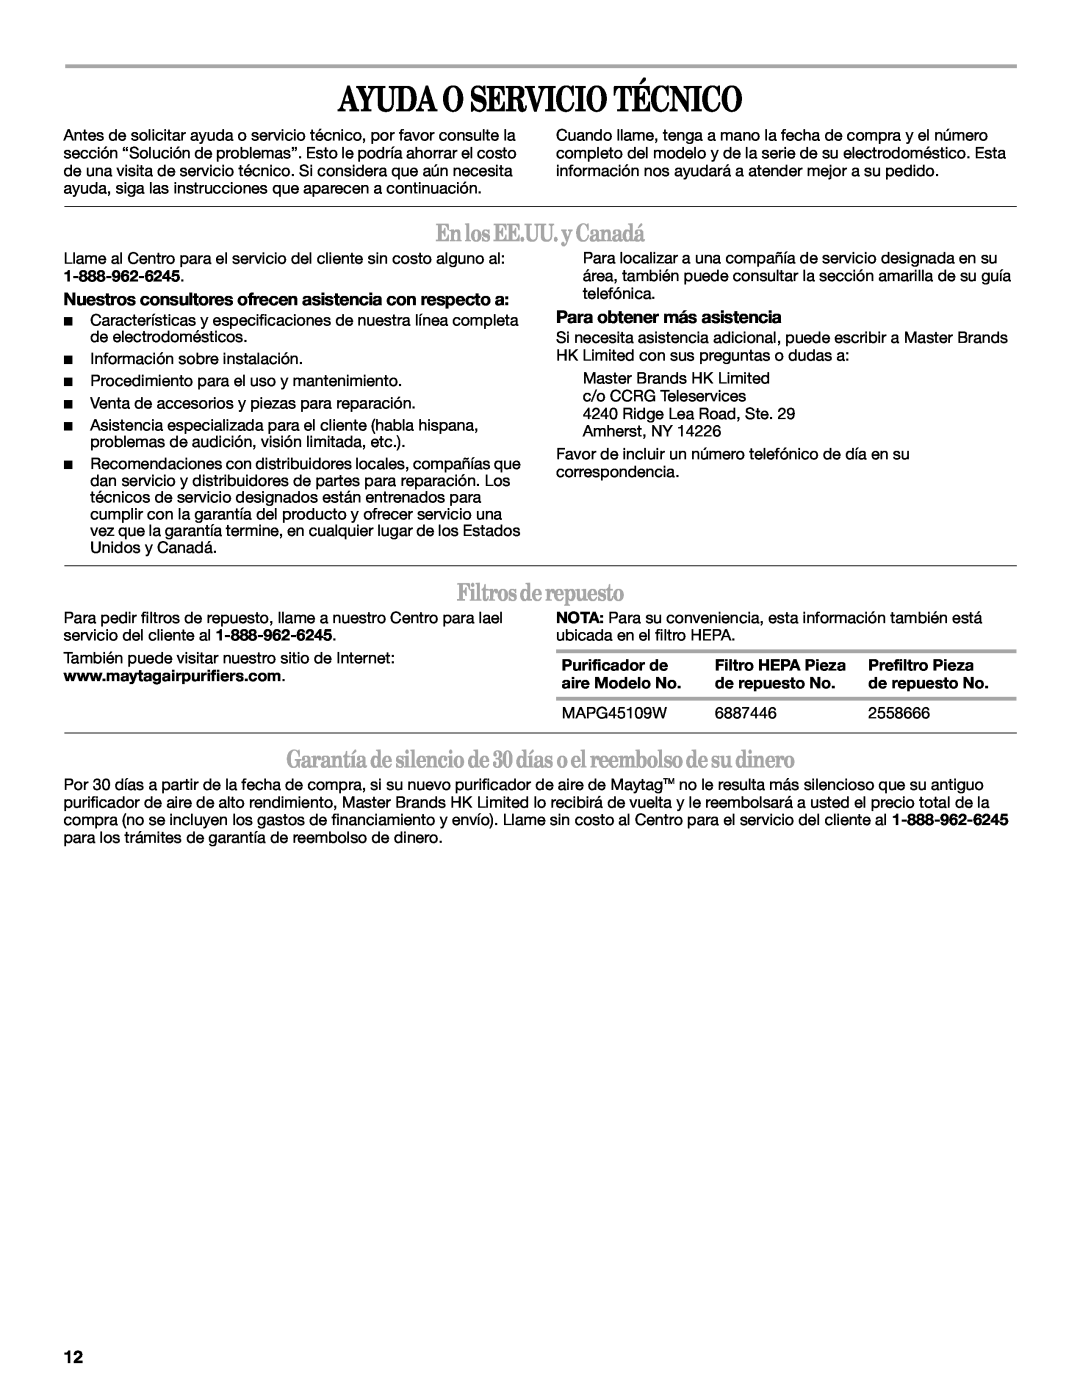 Maytag MT-AP510 manual Ayuda O Servicio Técnico, Enlos EE.UU. y Canadá, Filtros de repuesto, Para obtener más asistencia 